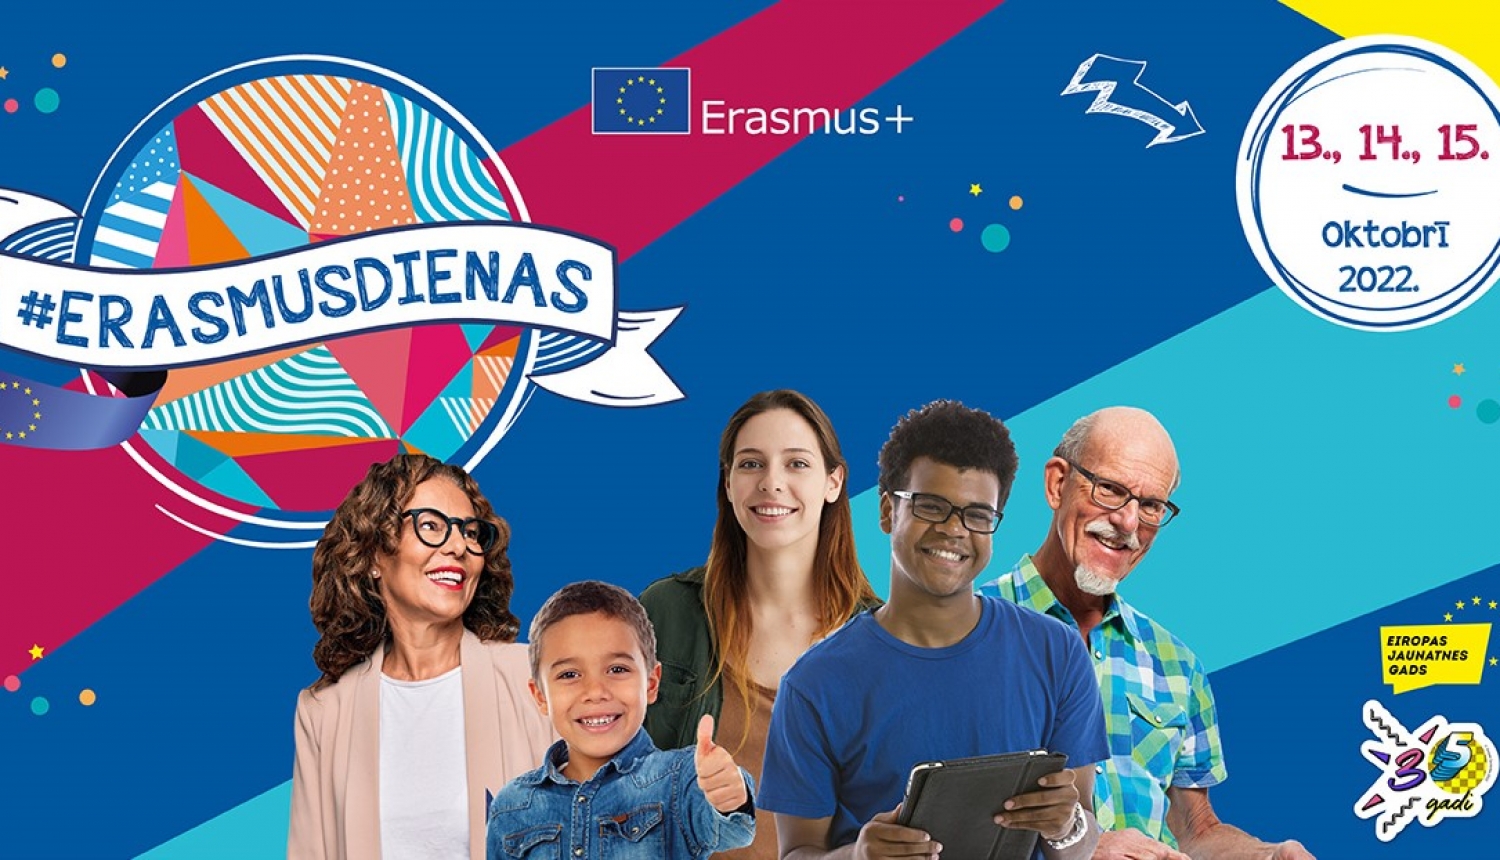 “Erasmus dienas 2022”